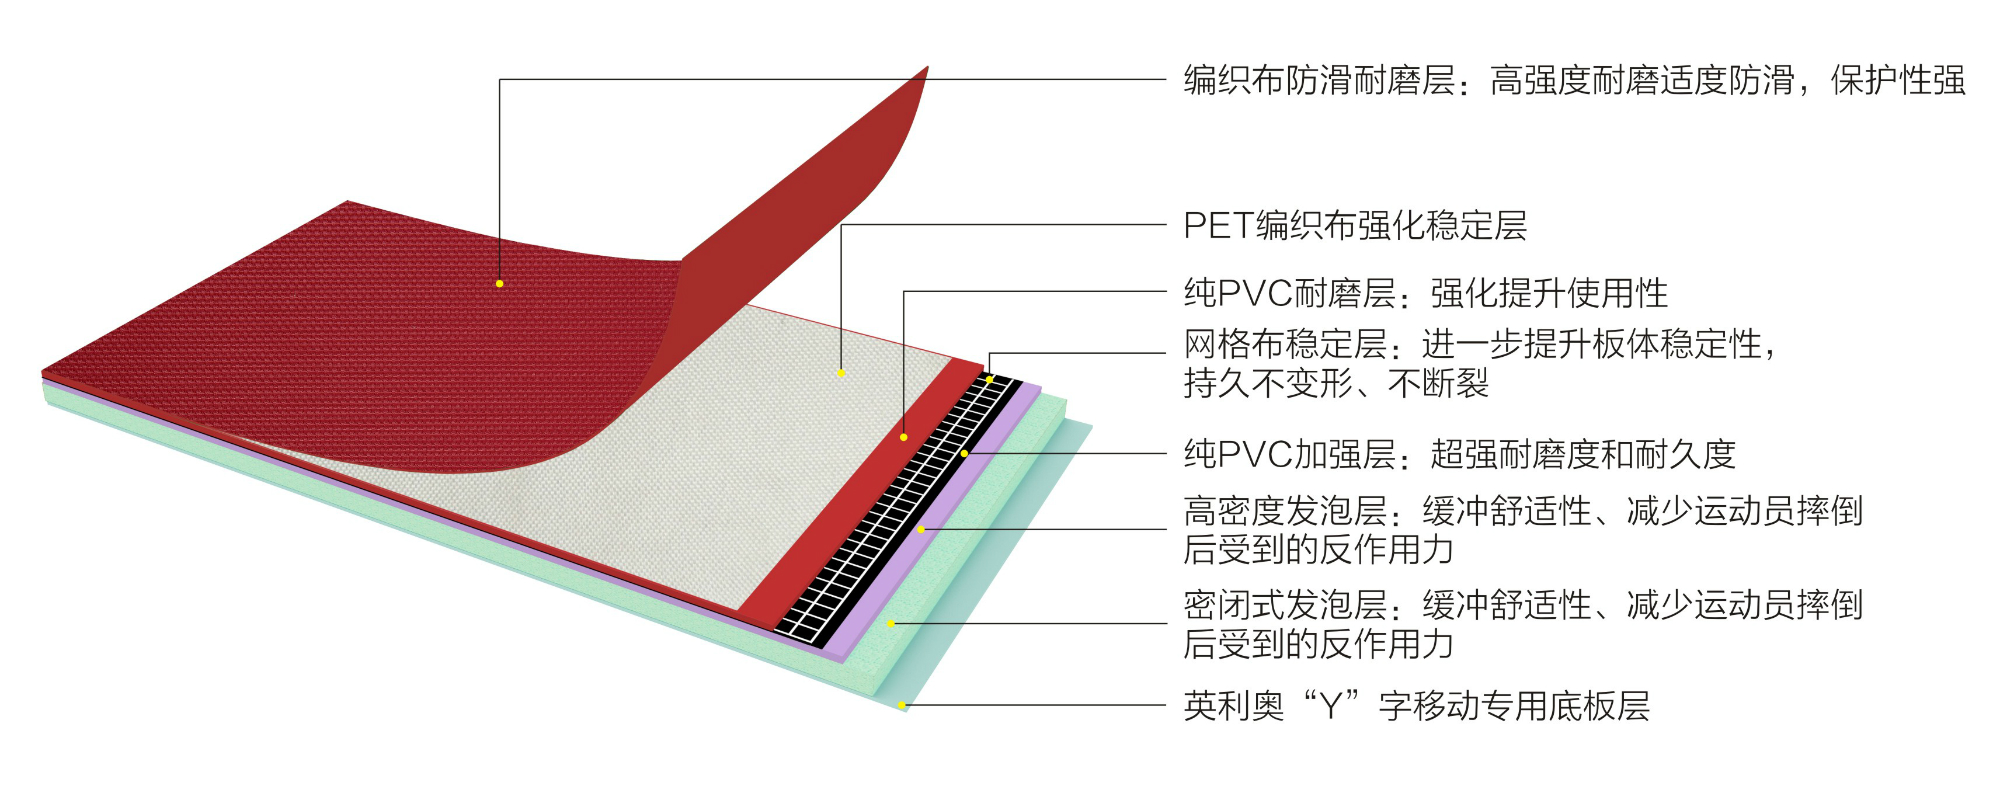 英利奥PET7.0mm布纹运动地板-结构图